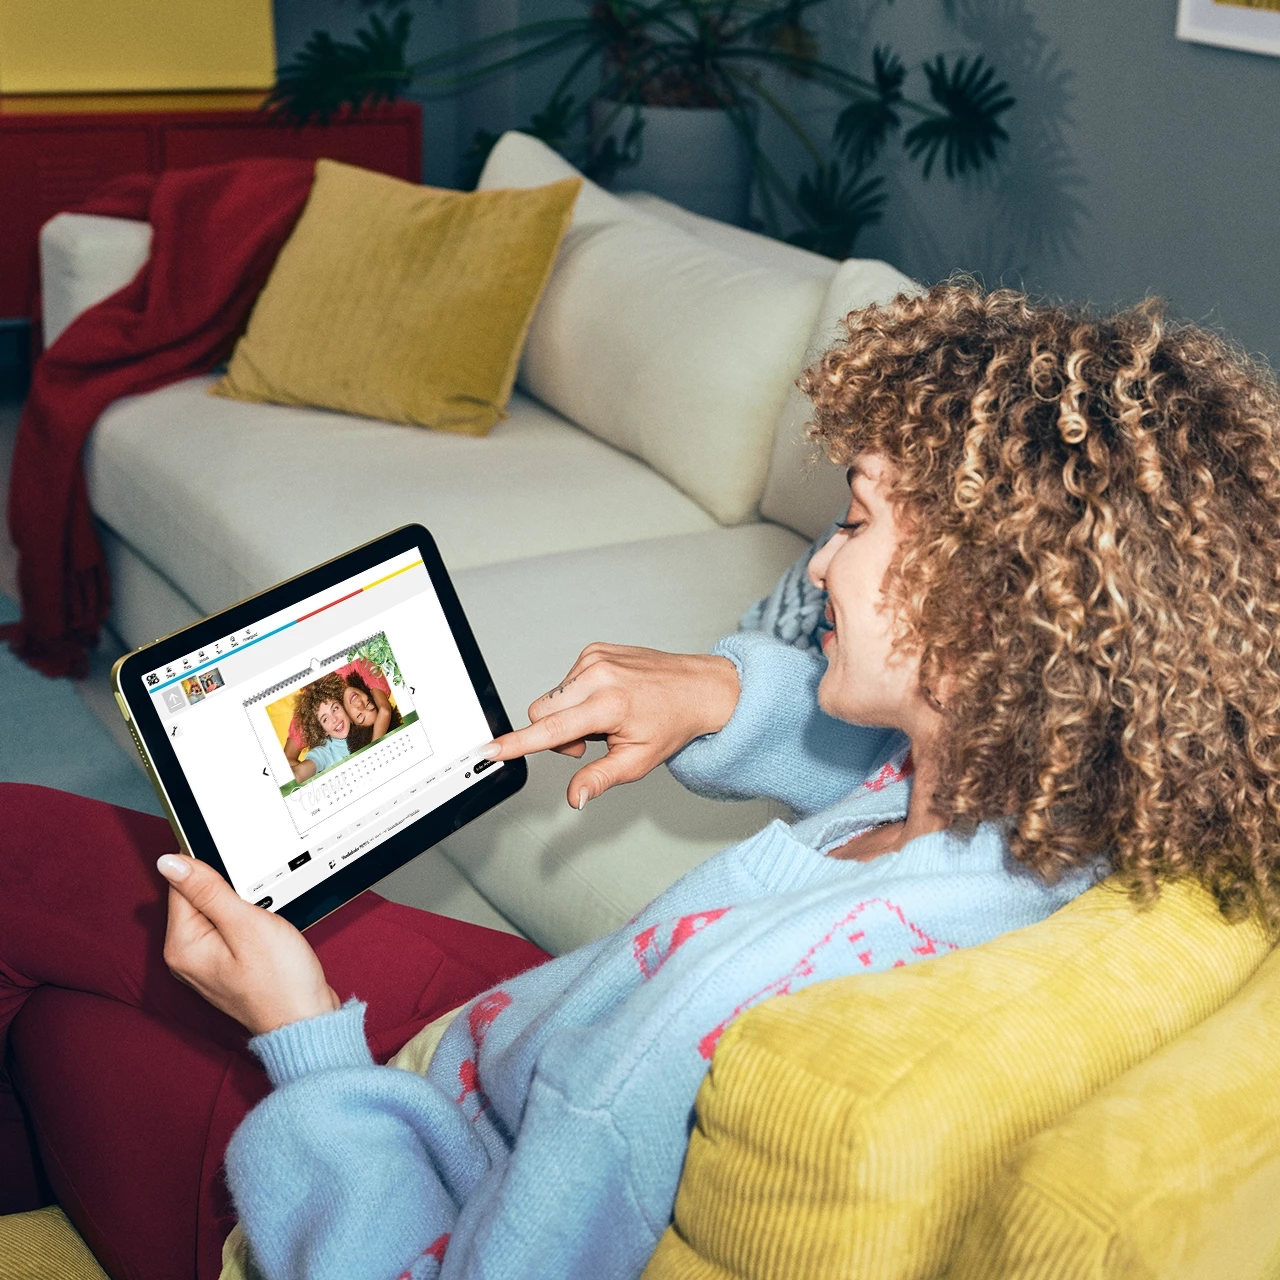 Eine lockige Frau gestaltet einen Kalender im ORWO-Fotodesigner von zuhause aus, auf der Couch sitzend, mit einem Tablet und sieht dabei tiefenentspannt aus.